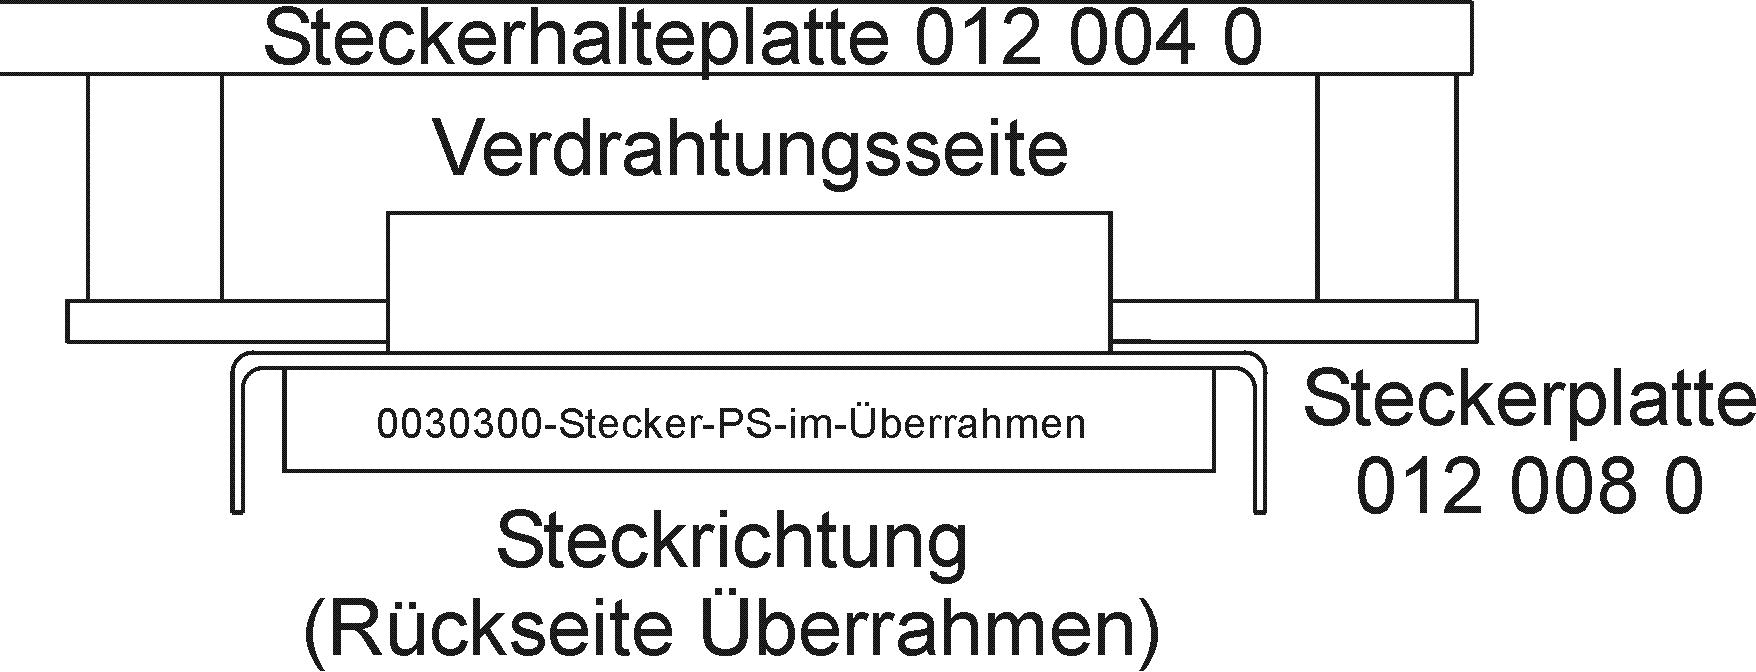 DESK-GmbH-0030300-Stecker-PS-im-Überrahmen